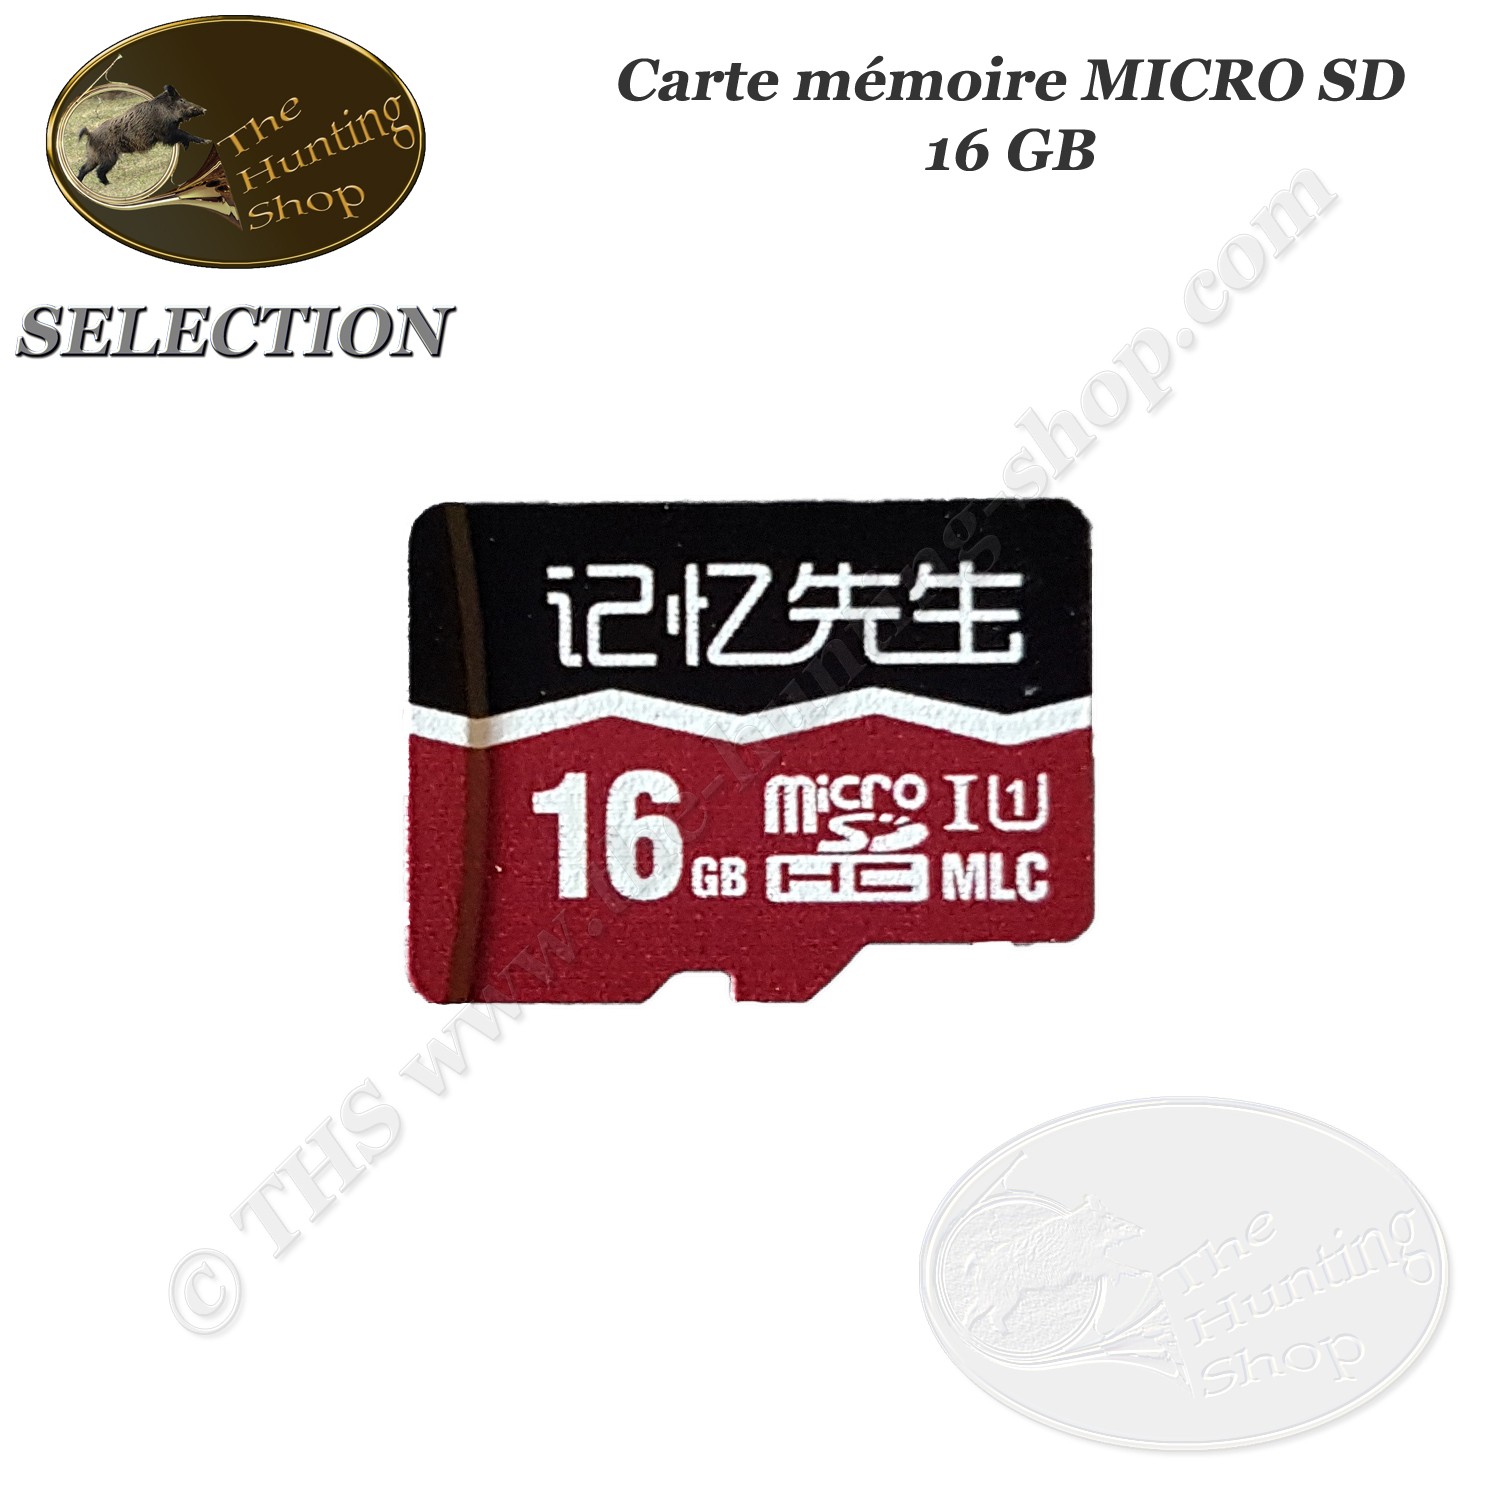 Ga wandelen Verduisteren Aja THS SELECTION 16 GB MICRO SD-geheugenkaart voor camera